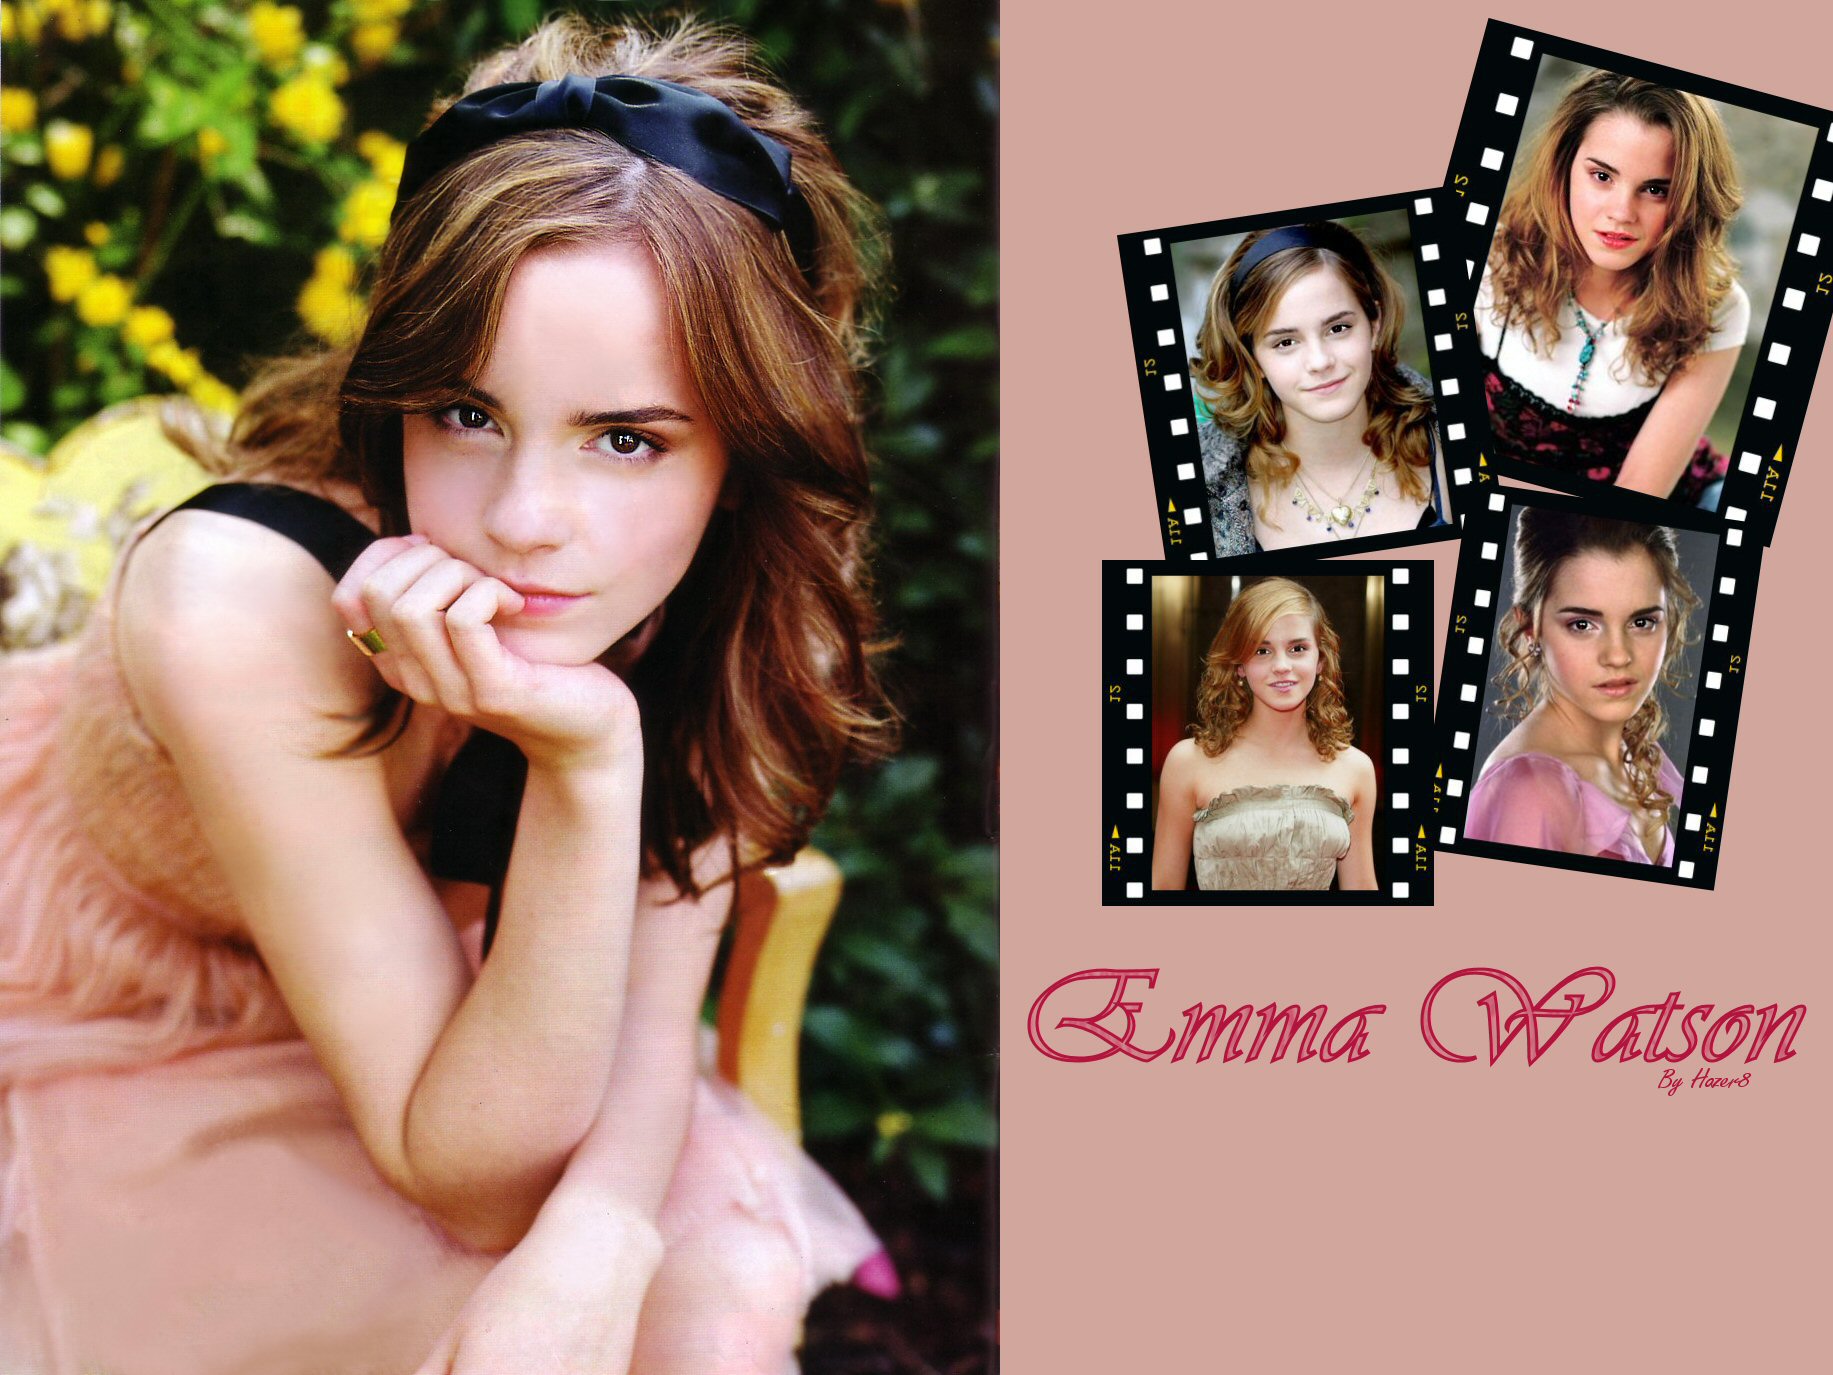 Download HQ Emma Watson wallpaper / Celebrities Female / 1833x1375